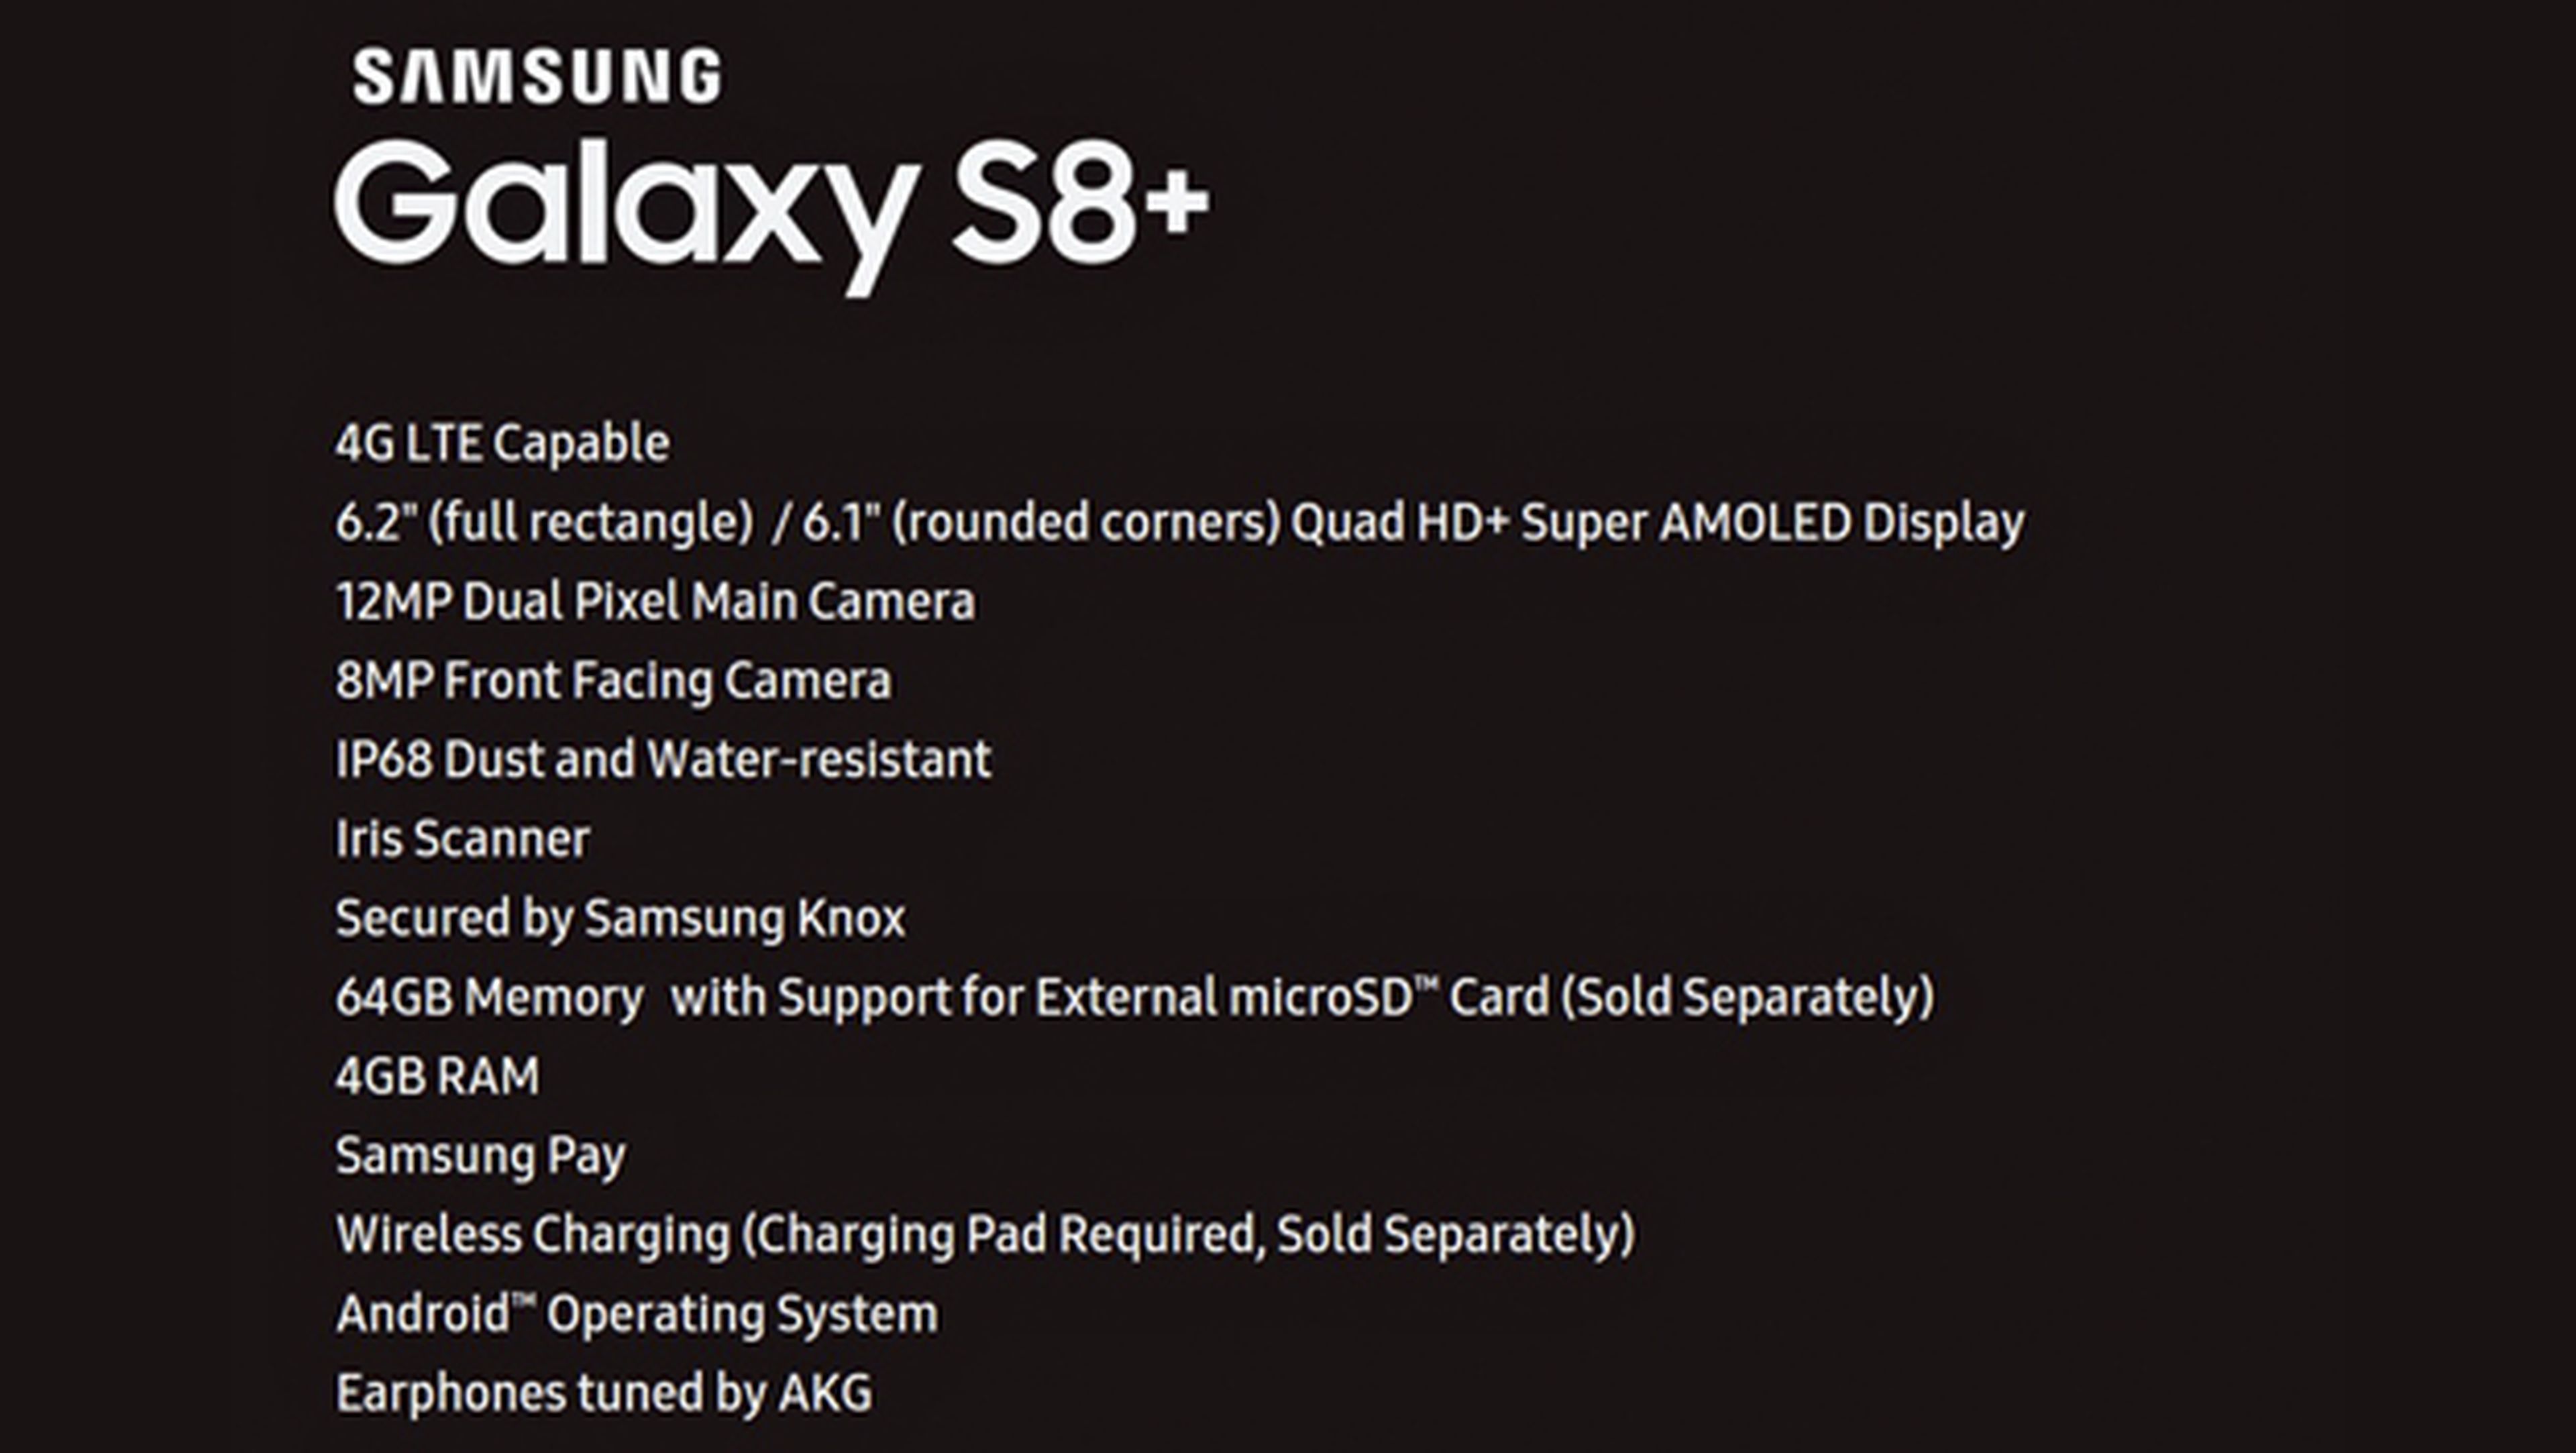 La tabla extra-oficial de características del Galaxy S8 Plus